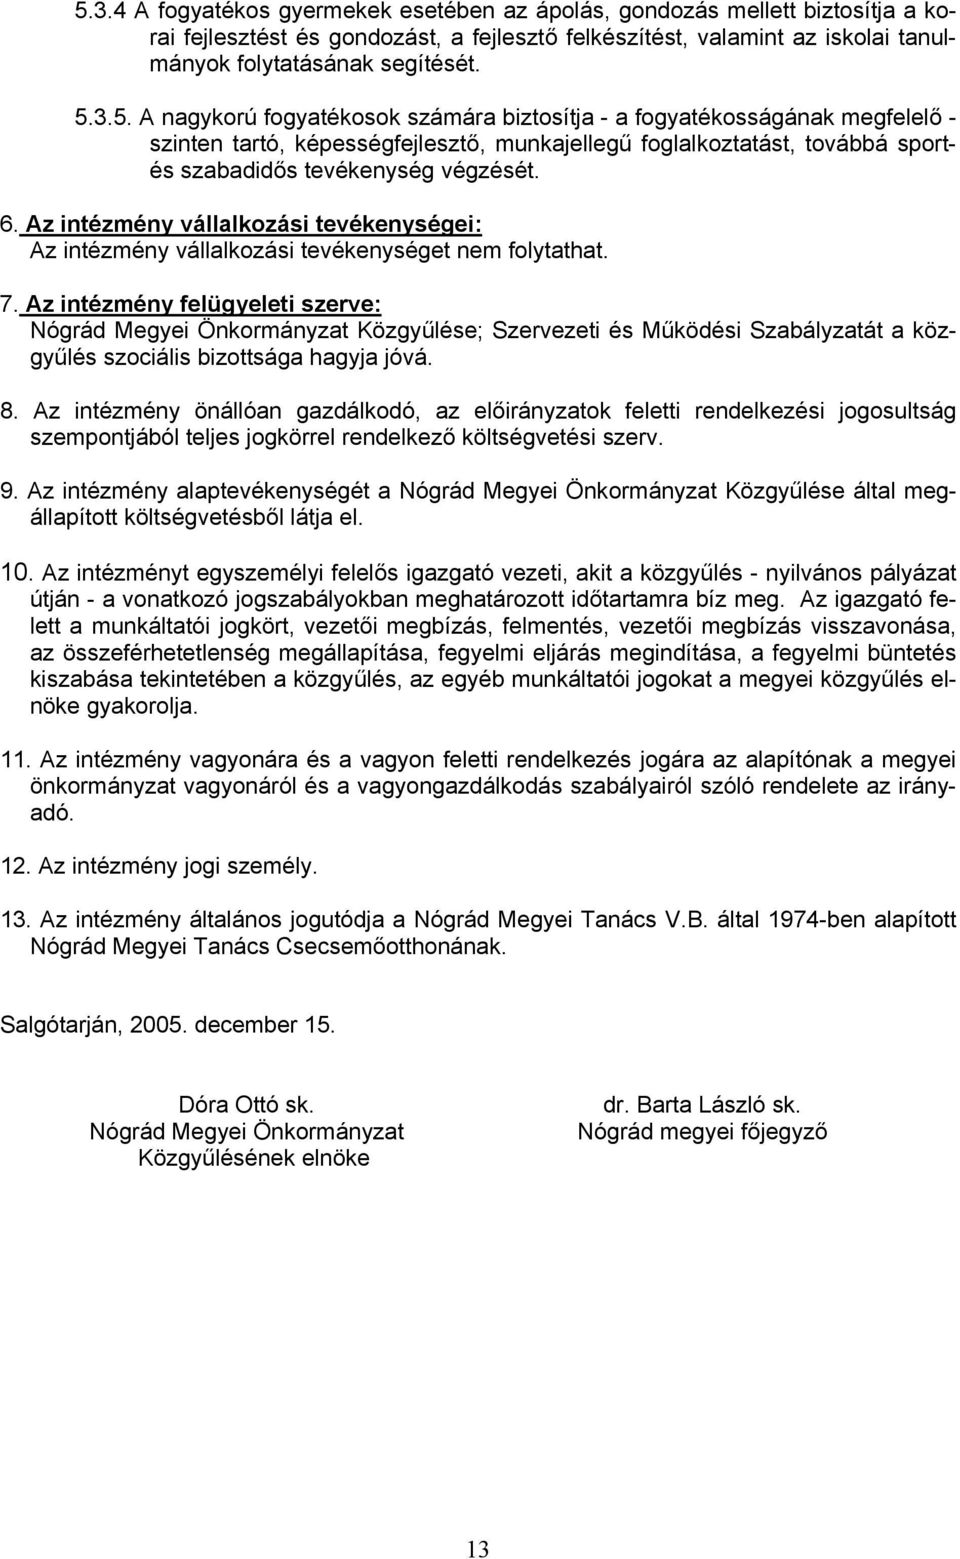 Az intézmény felügyeleti szerve: Nógrád Megyei Önkormányzat Közgyűlése; Szervezeti és Működési Szabályzatát a közgyűlés szociális bizottsága hagyja jóvá. 8.